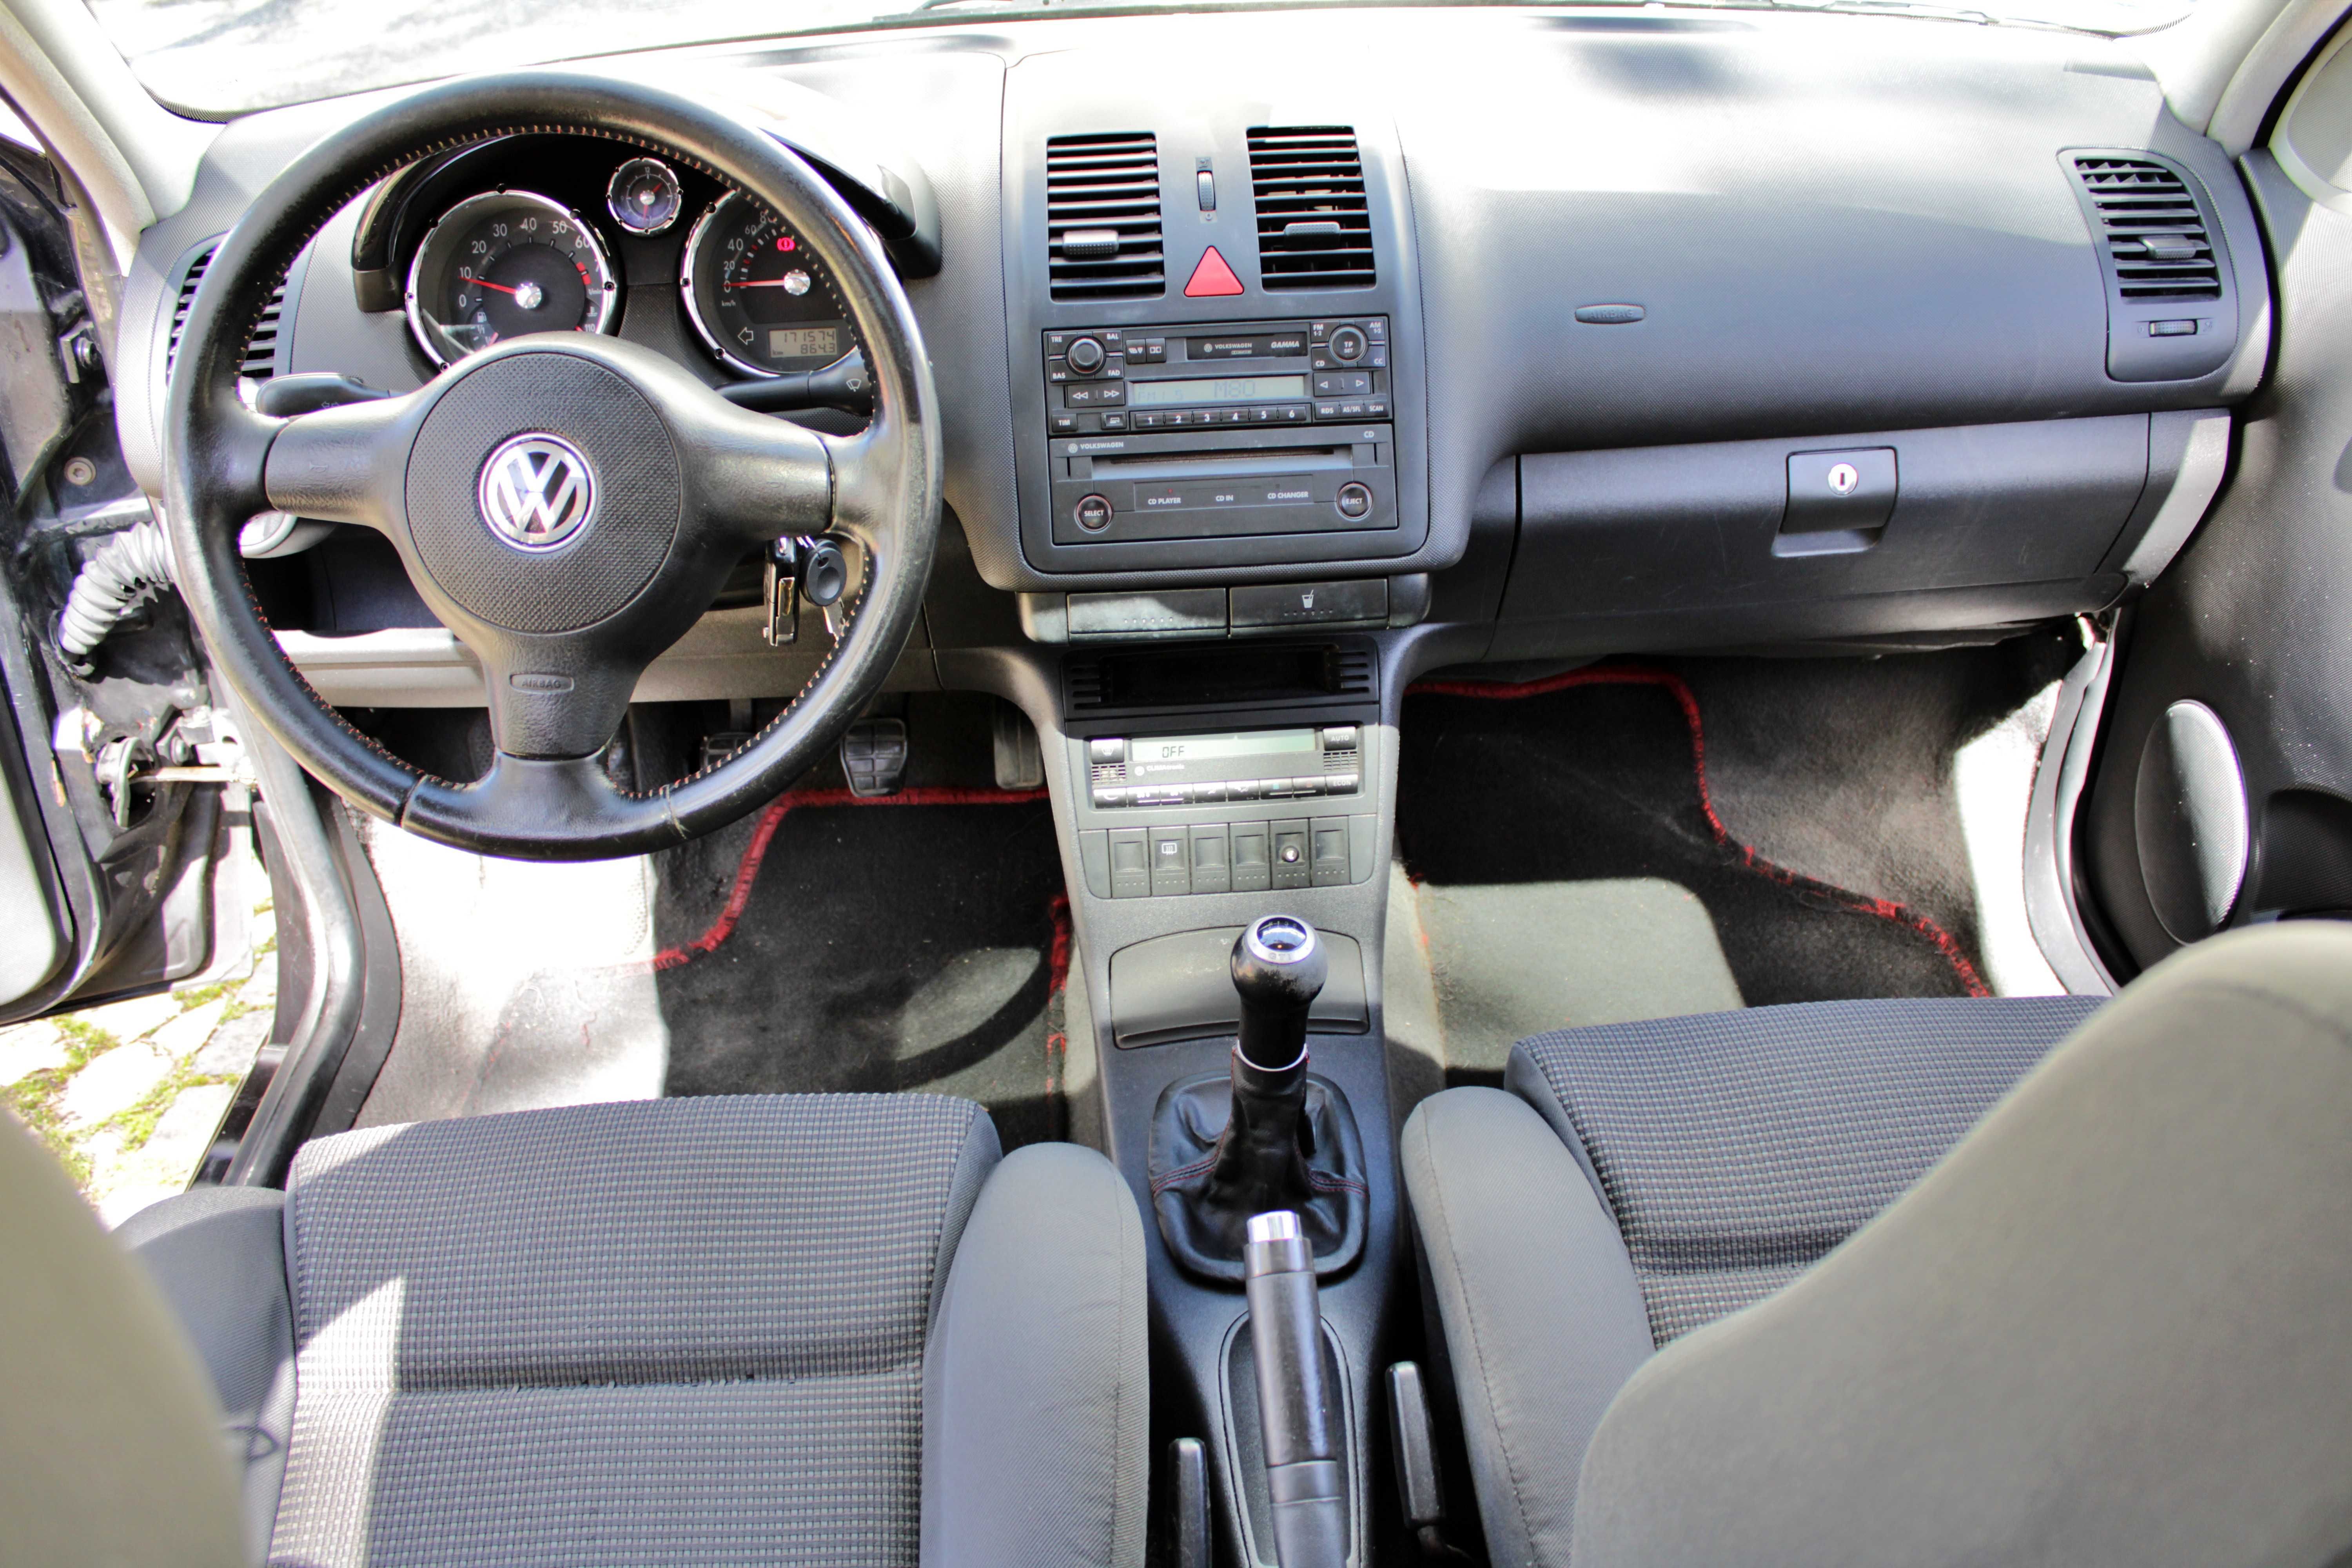 VW Polo GTI 1.4 16v 100 cv